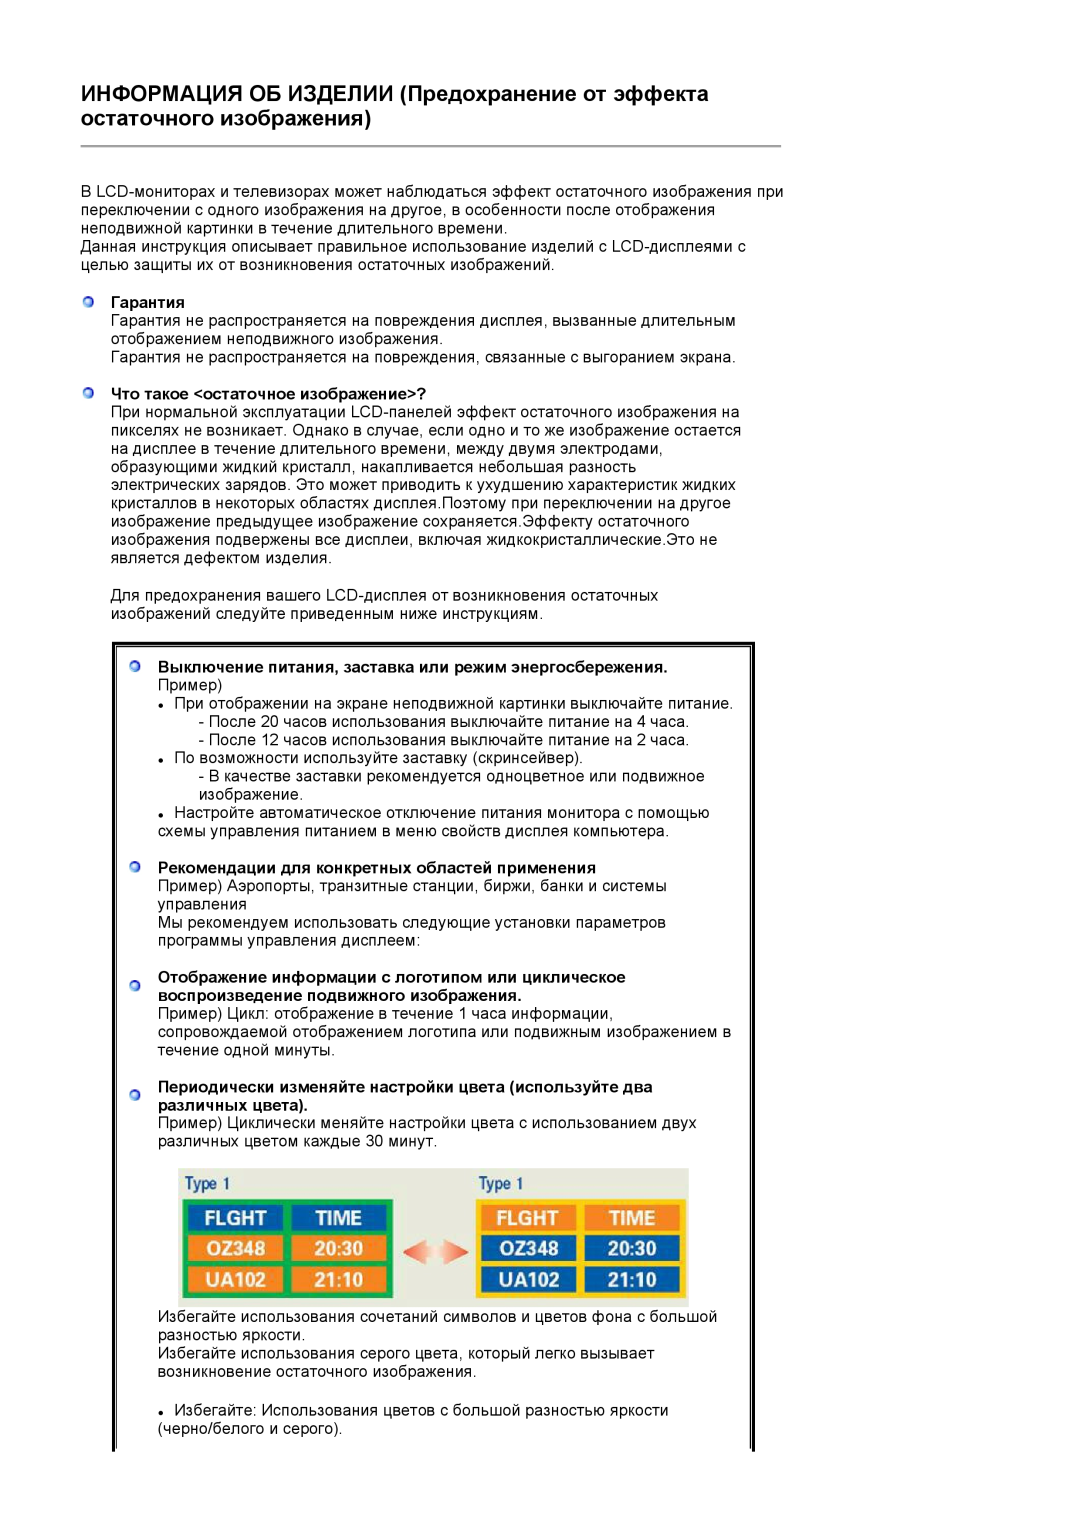 Samsung LS22PEJSFV/EDC manual Гарантия, Что такое остаточное изображение?, Рекомендации для конкретных областей применения 